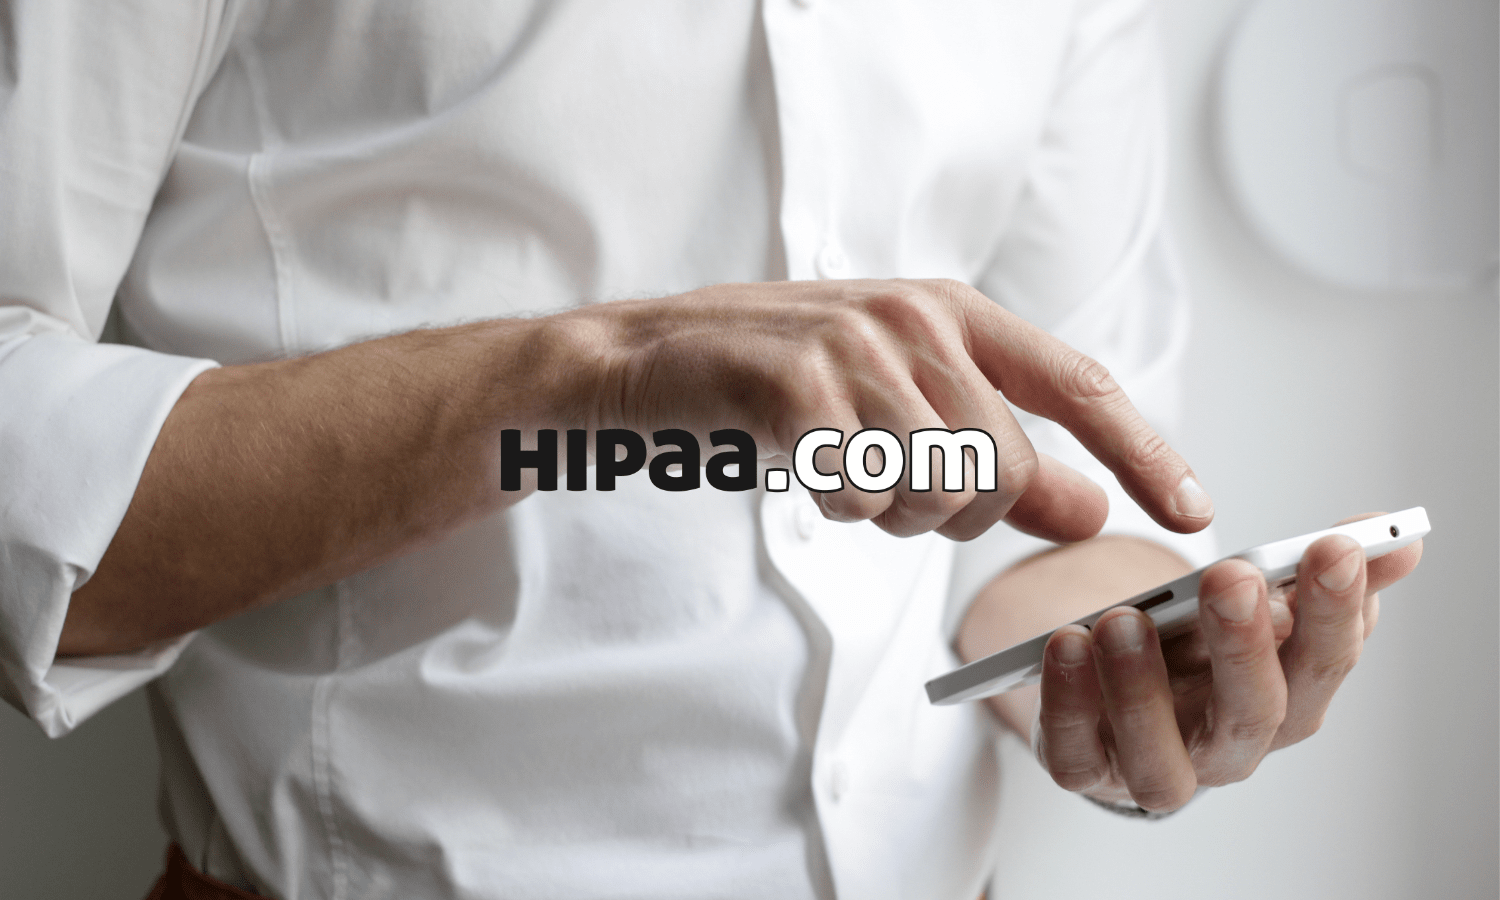 HIPAA.com